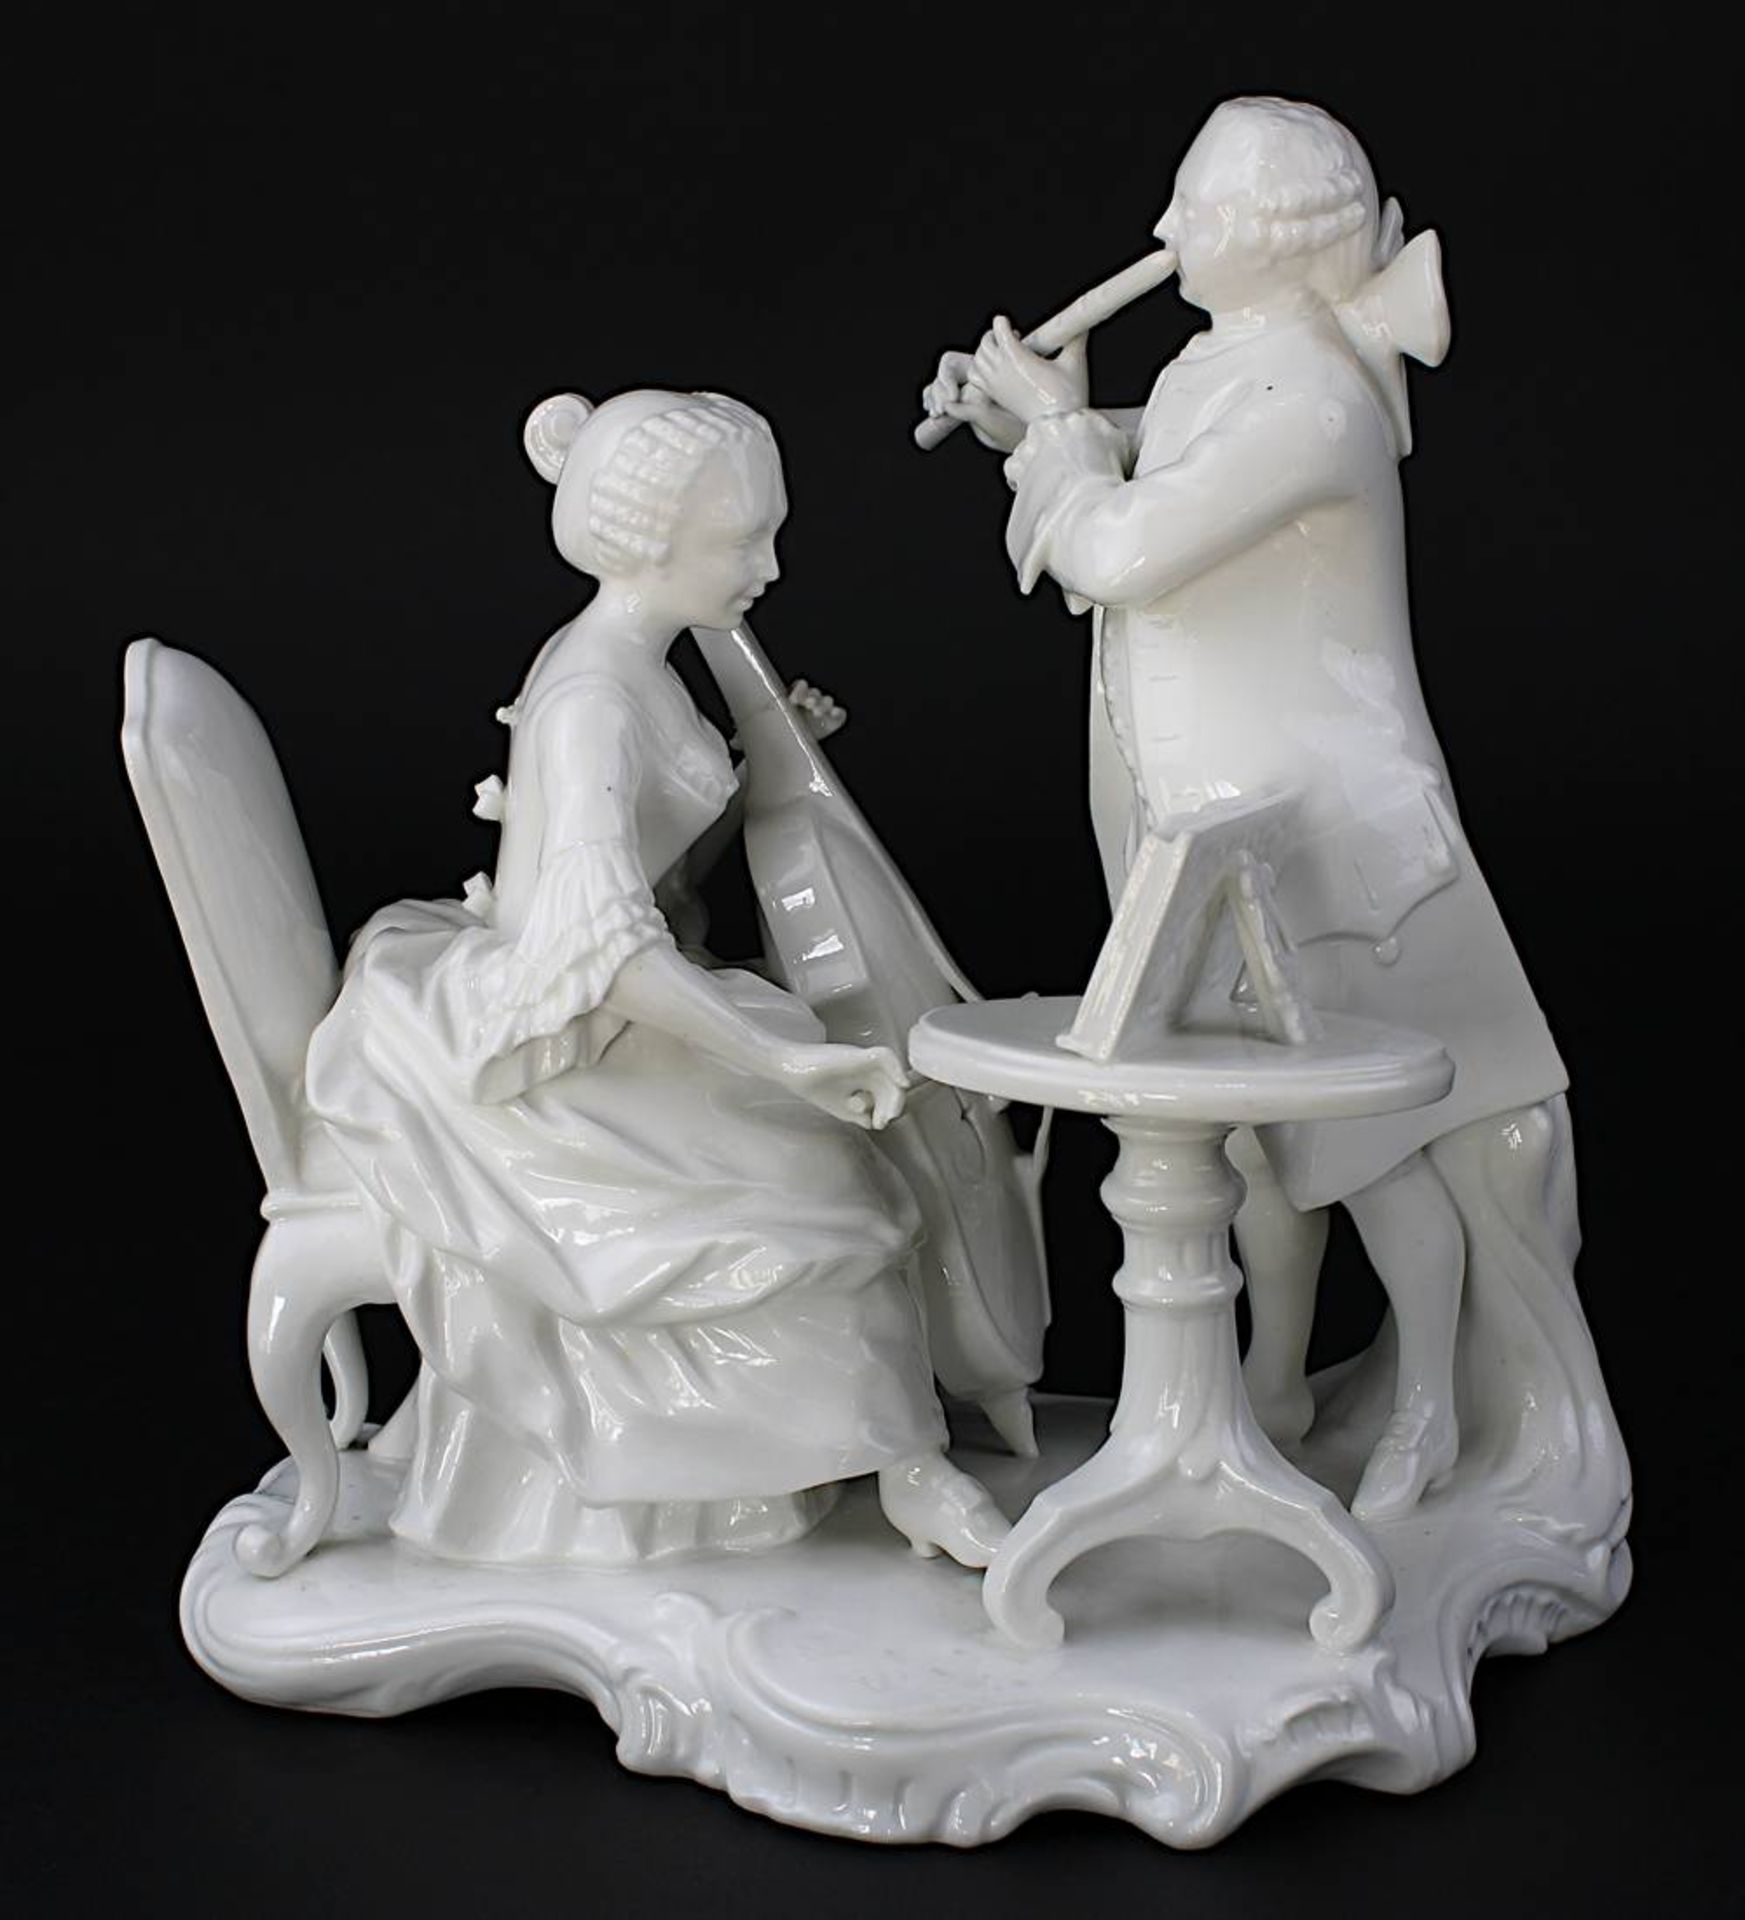 Nymphenburg Porzellanfigur "Das Gehör" aus Joh. Friedrich Lücks Allegoriefolge der 5 Sinne, Cello